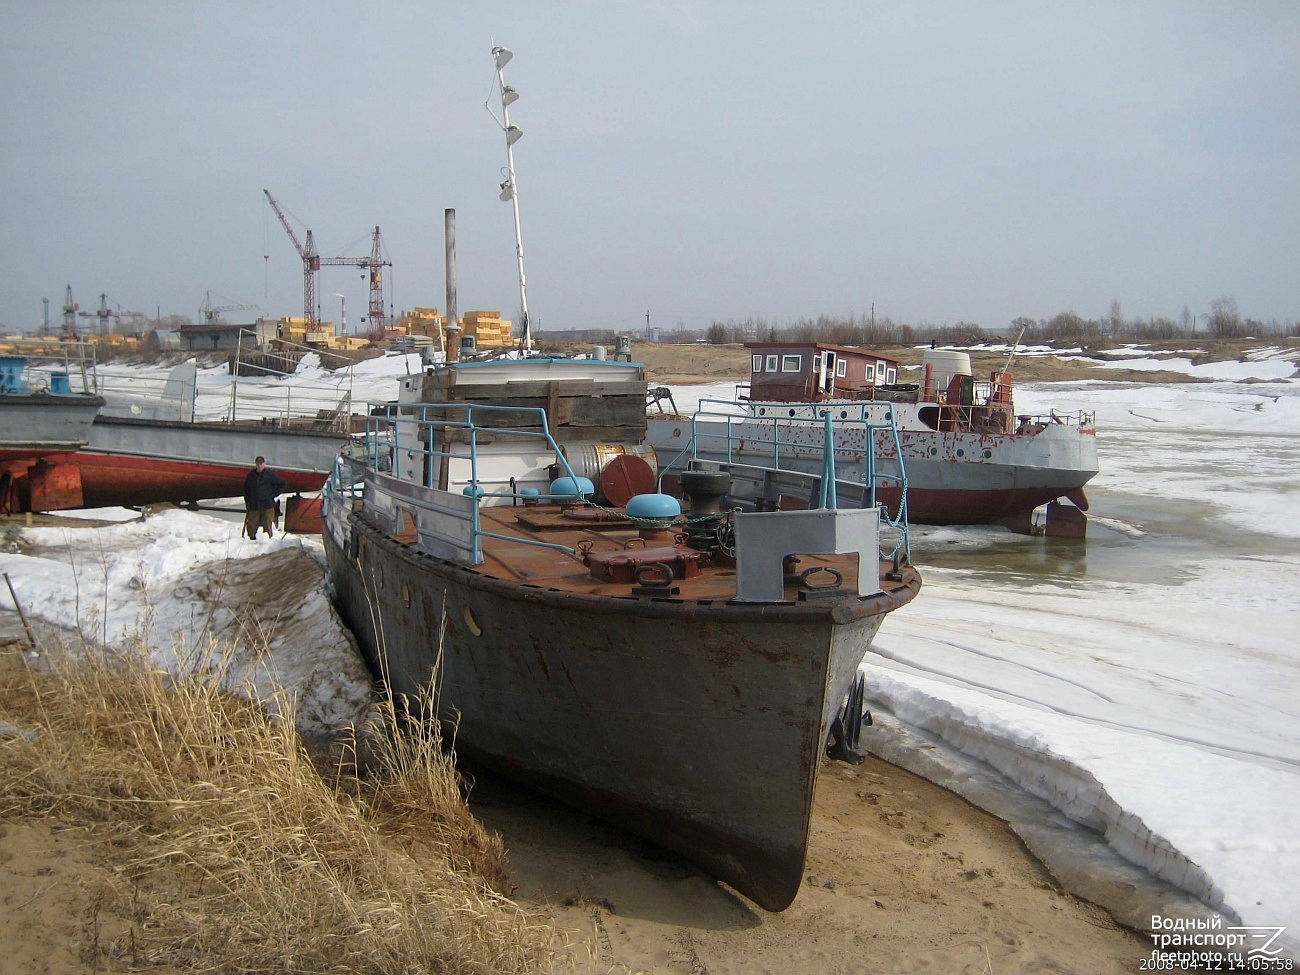 Неопознанное судно - тип Костромич. Russia - Kama Basin